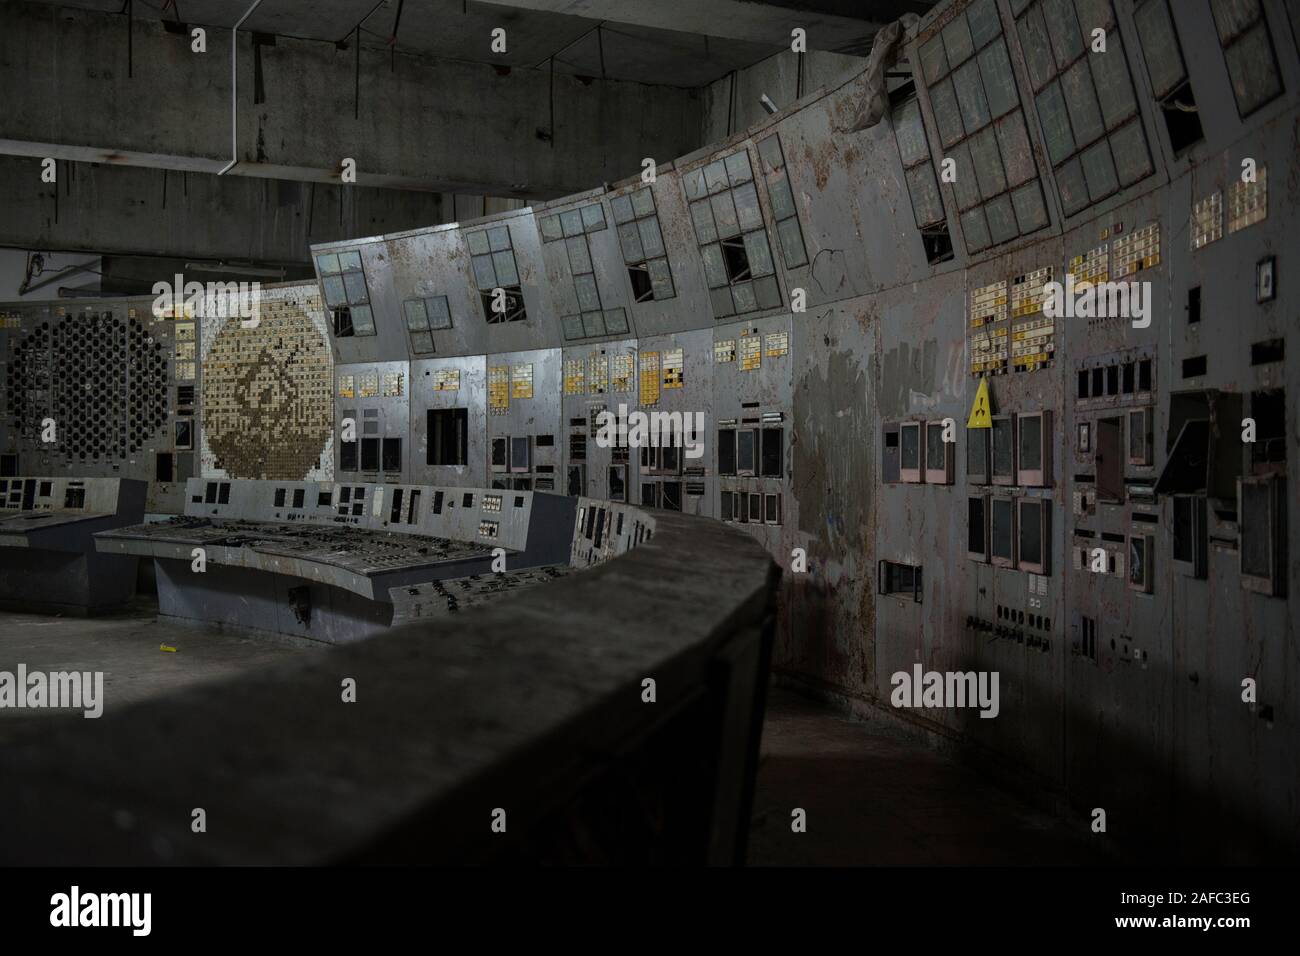 La salle de commande du réacteur de Tchernobyl, quatre le site de l'économie la plus terrible catastrophe nucléaire. L'ancienne centrale électrique nucléaire est la salle de contrôle où les ingénieurs fermer les pompes de refroidissement du réacteur dans le cadre d'un test de sécurité en avril 1986, qui a conduit à une explosion qui a tué au moins 28 personnes dans la suite immédiate et contaminé les environs. La chambre, située sous une tonne de confinement en acier 36 000-arch, a encore ses écrans et panneaux d'affichage d'origine de boutons de commande. Tchernobyl, Ivankiv, Kiev Kiev oblast, Ukraine, Europe Banque D'Images